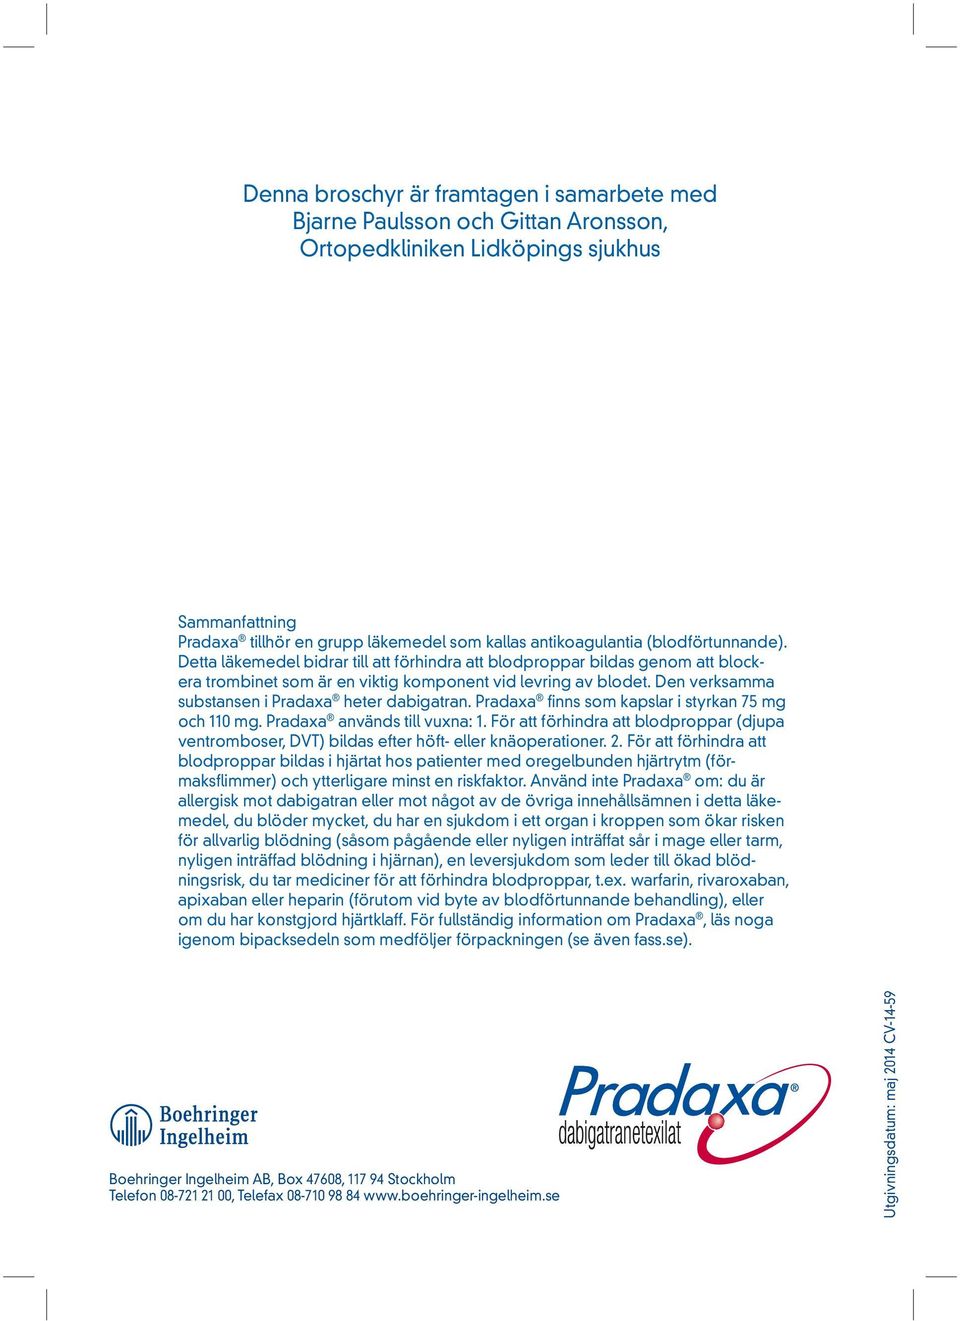 Den verksamma substansen i Pradaxa heter dabigatran. Pradaxa finns som kapslar i styrkan 75 mg och 110 mg. Pradaxa används till vuxna: 1.